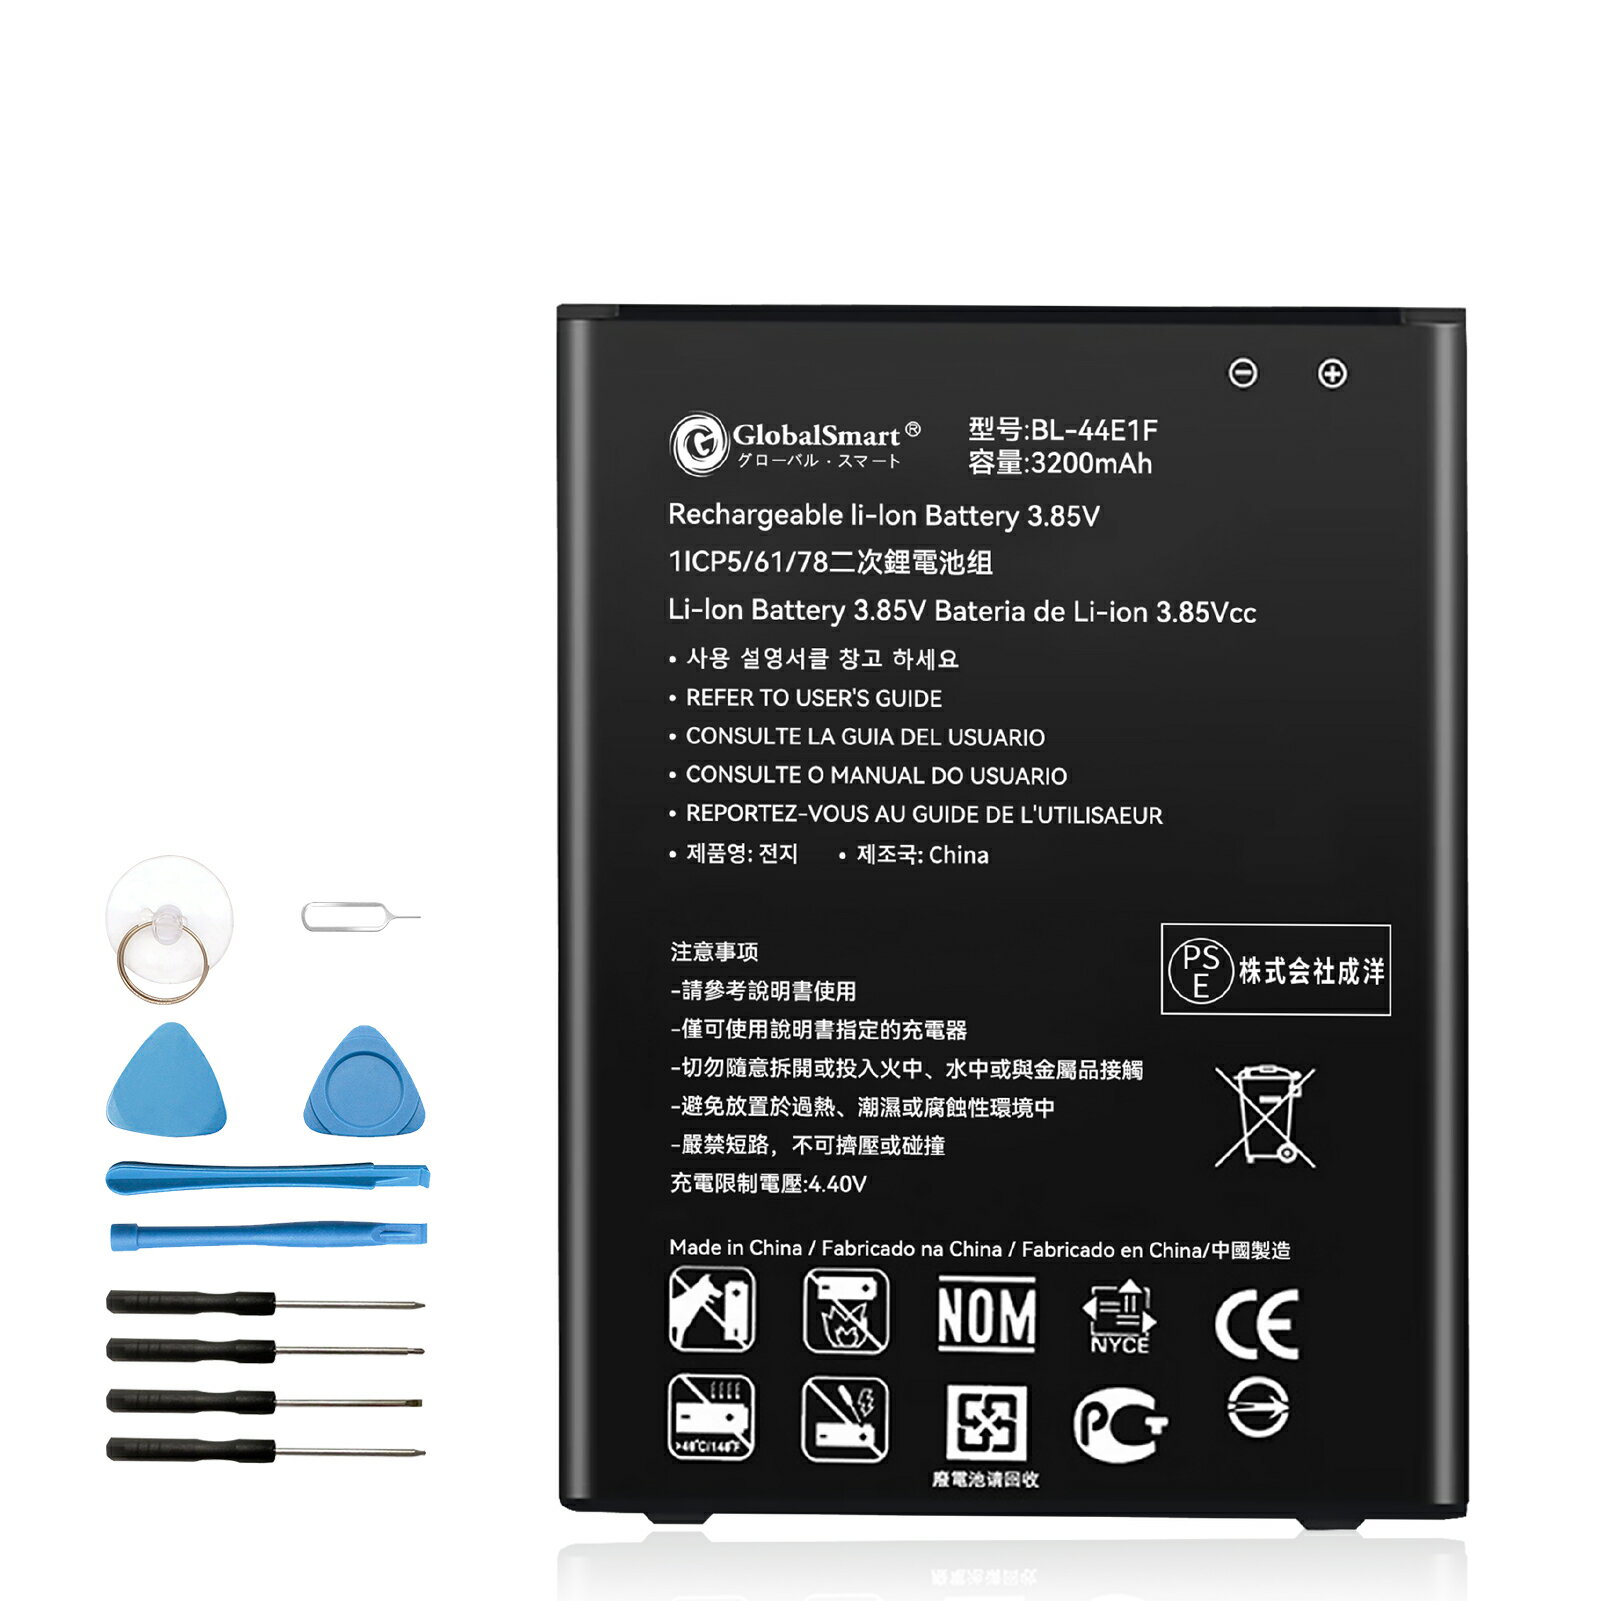 Globalsmart 新品 LG H990DS 互換 バッテリー【3200mAh 3.85V】対応用 1年保証 高品質 交換 互換高性能 電池パック XEO